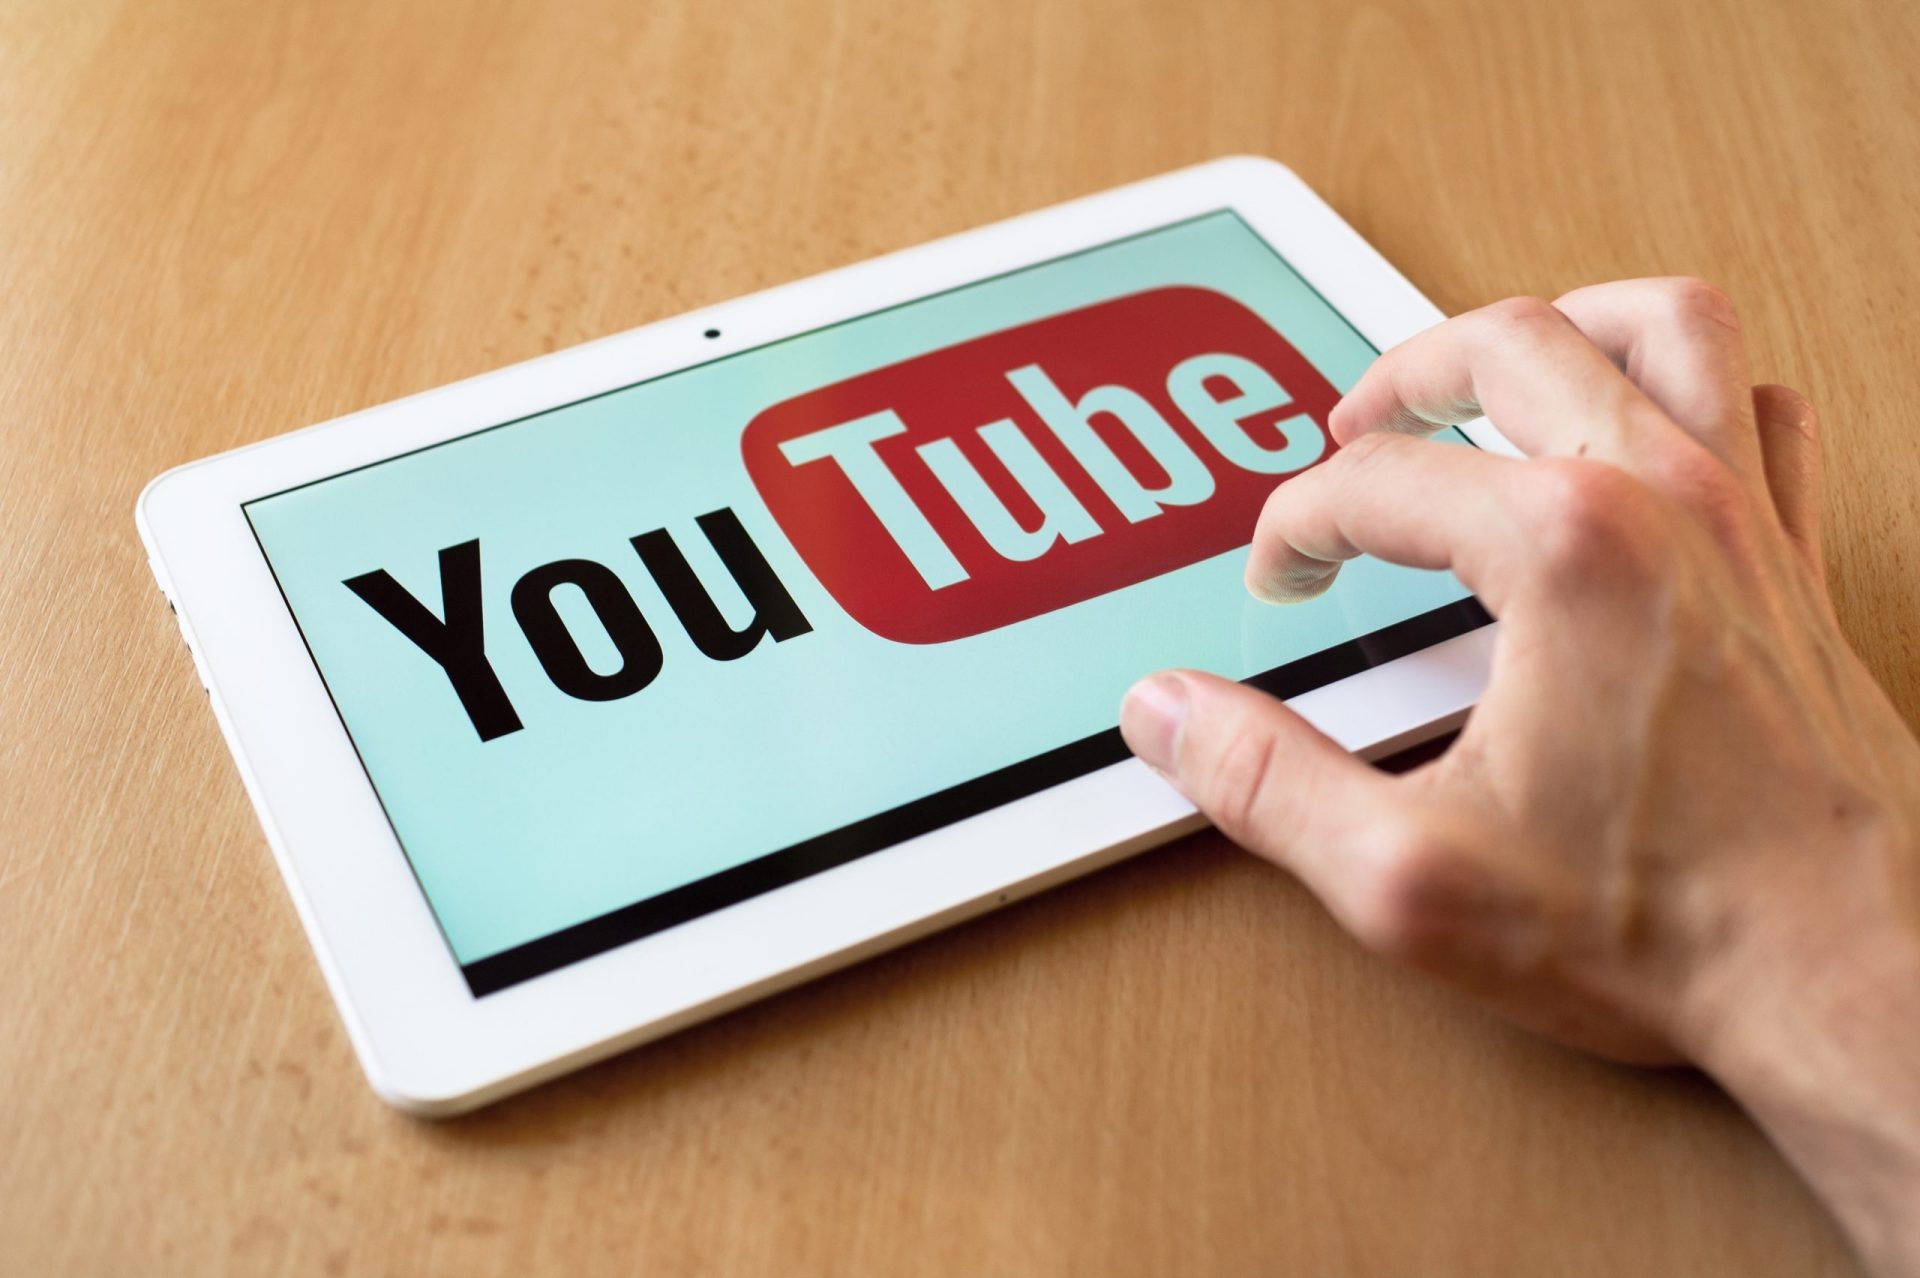 Youtube é das plataformas que ajuda mais à desinformação, dizem organizações